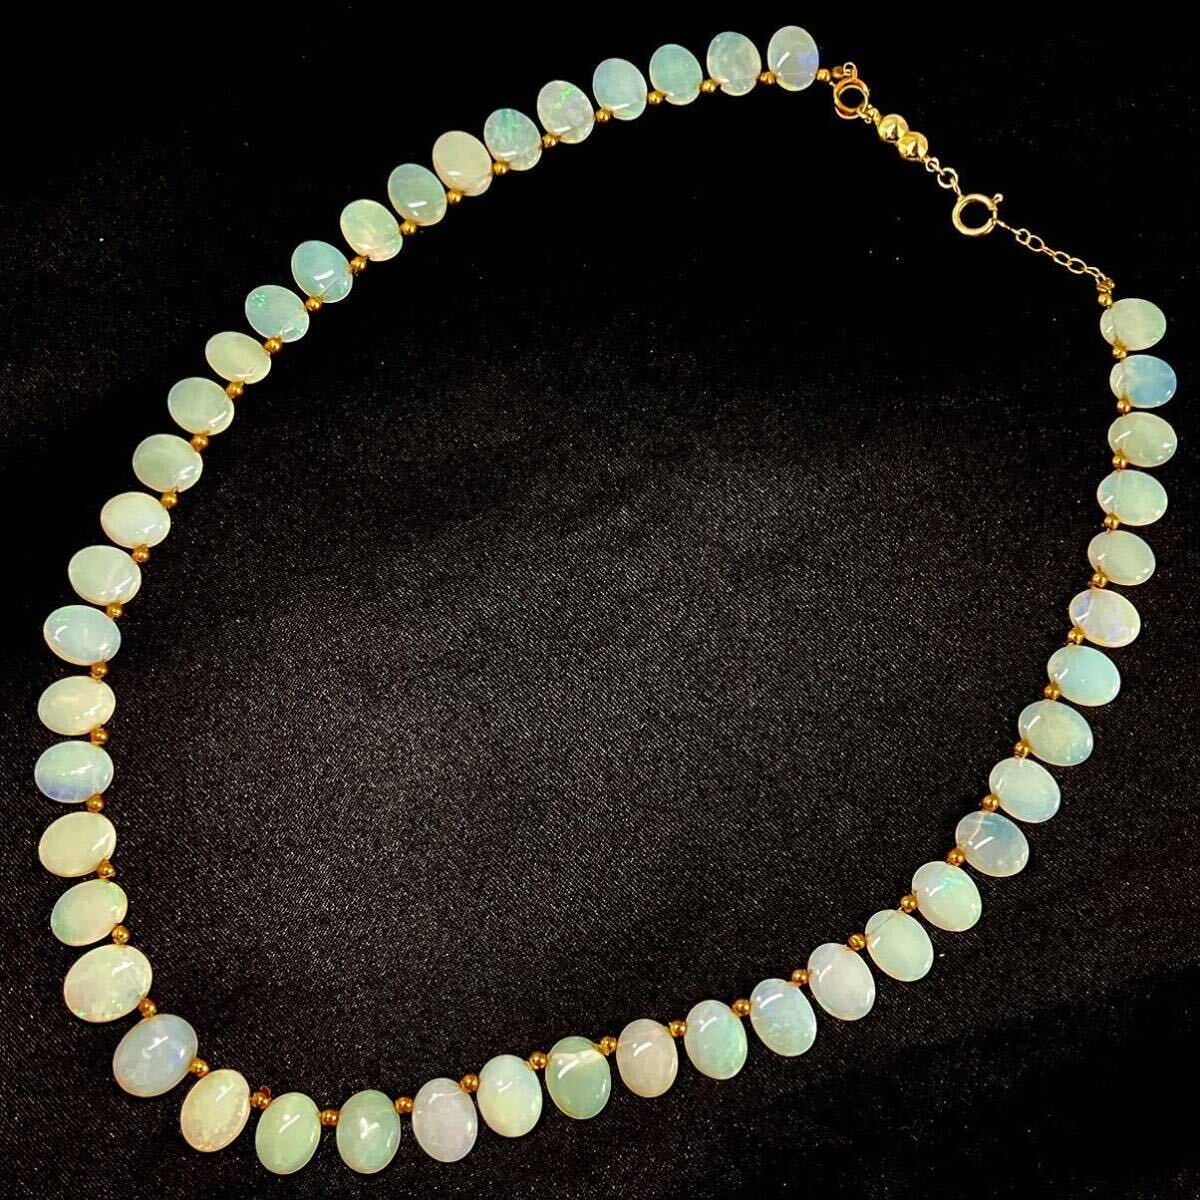 ［オパールネックレス］a ◎重量約14.6g opal necklace water white ホワイト 約46.5cm K18 遊色 合成 accessory jewelry silver DC0_画像3